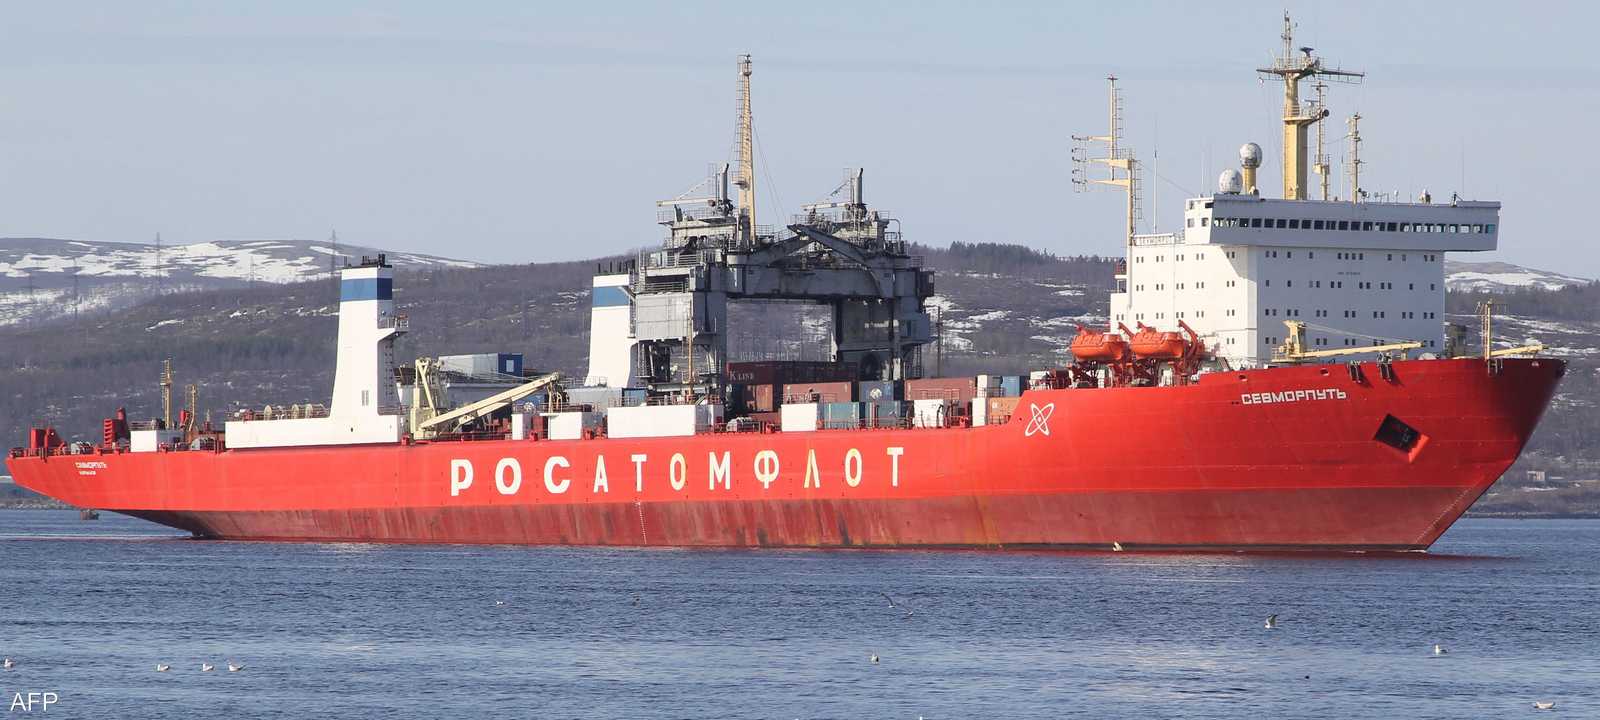 السفينة "سيفموربوت" تعود إلى الحقبة السوفيتية